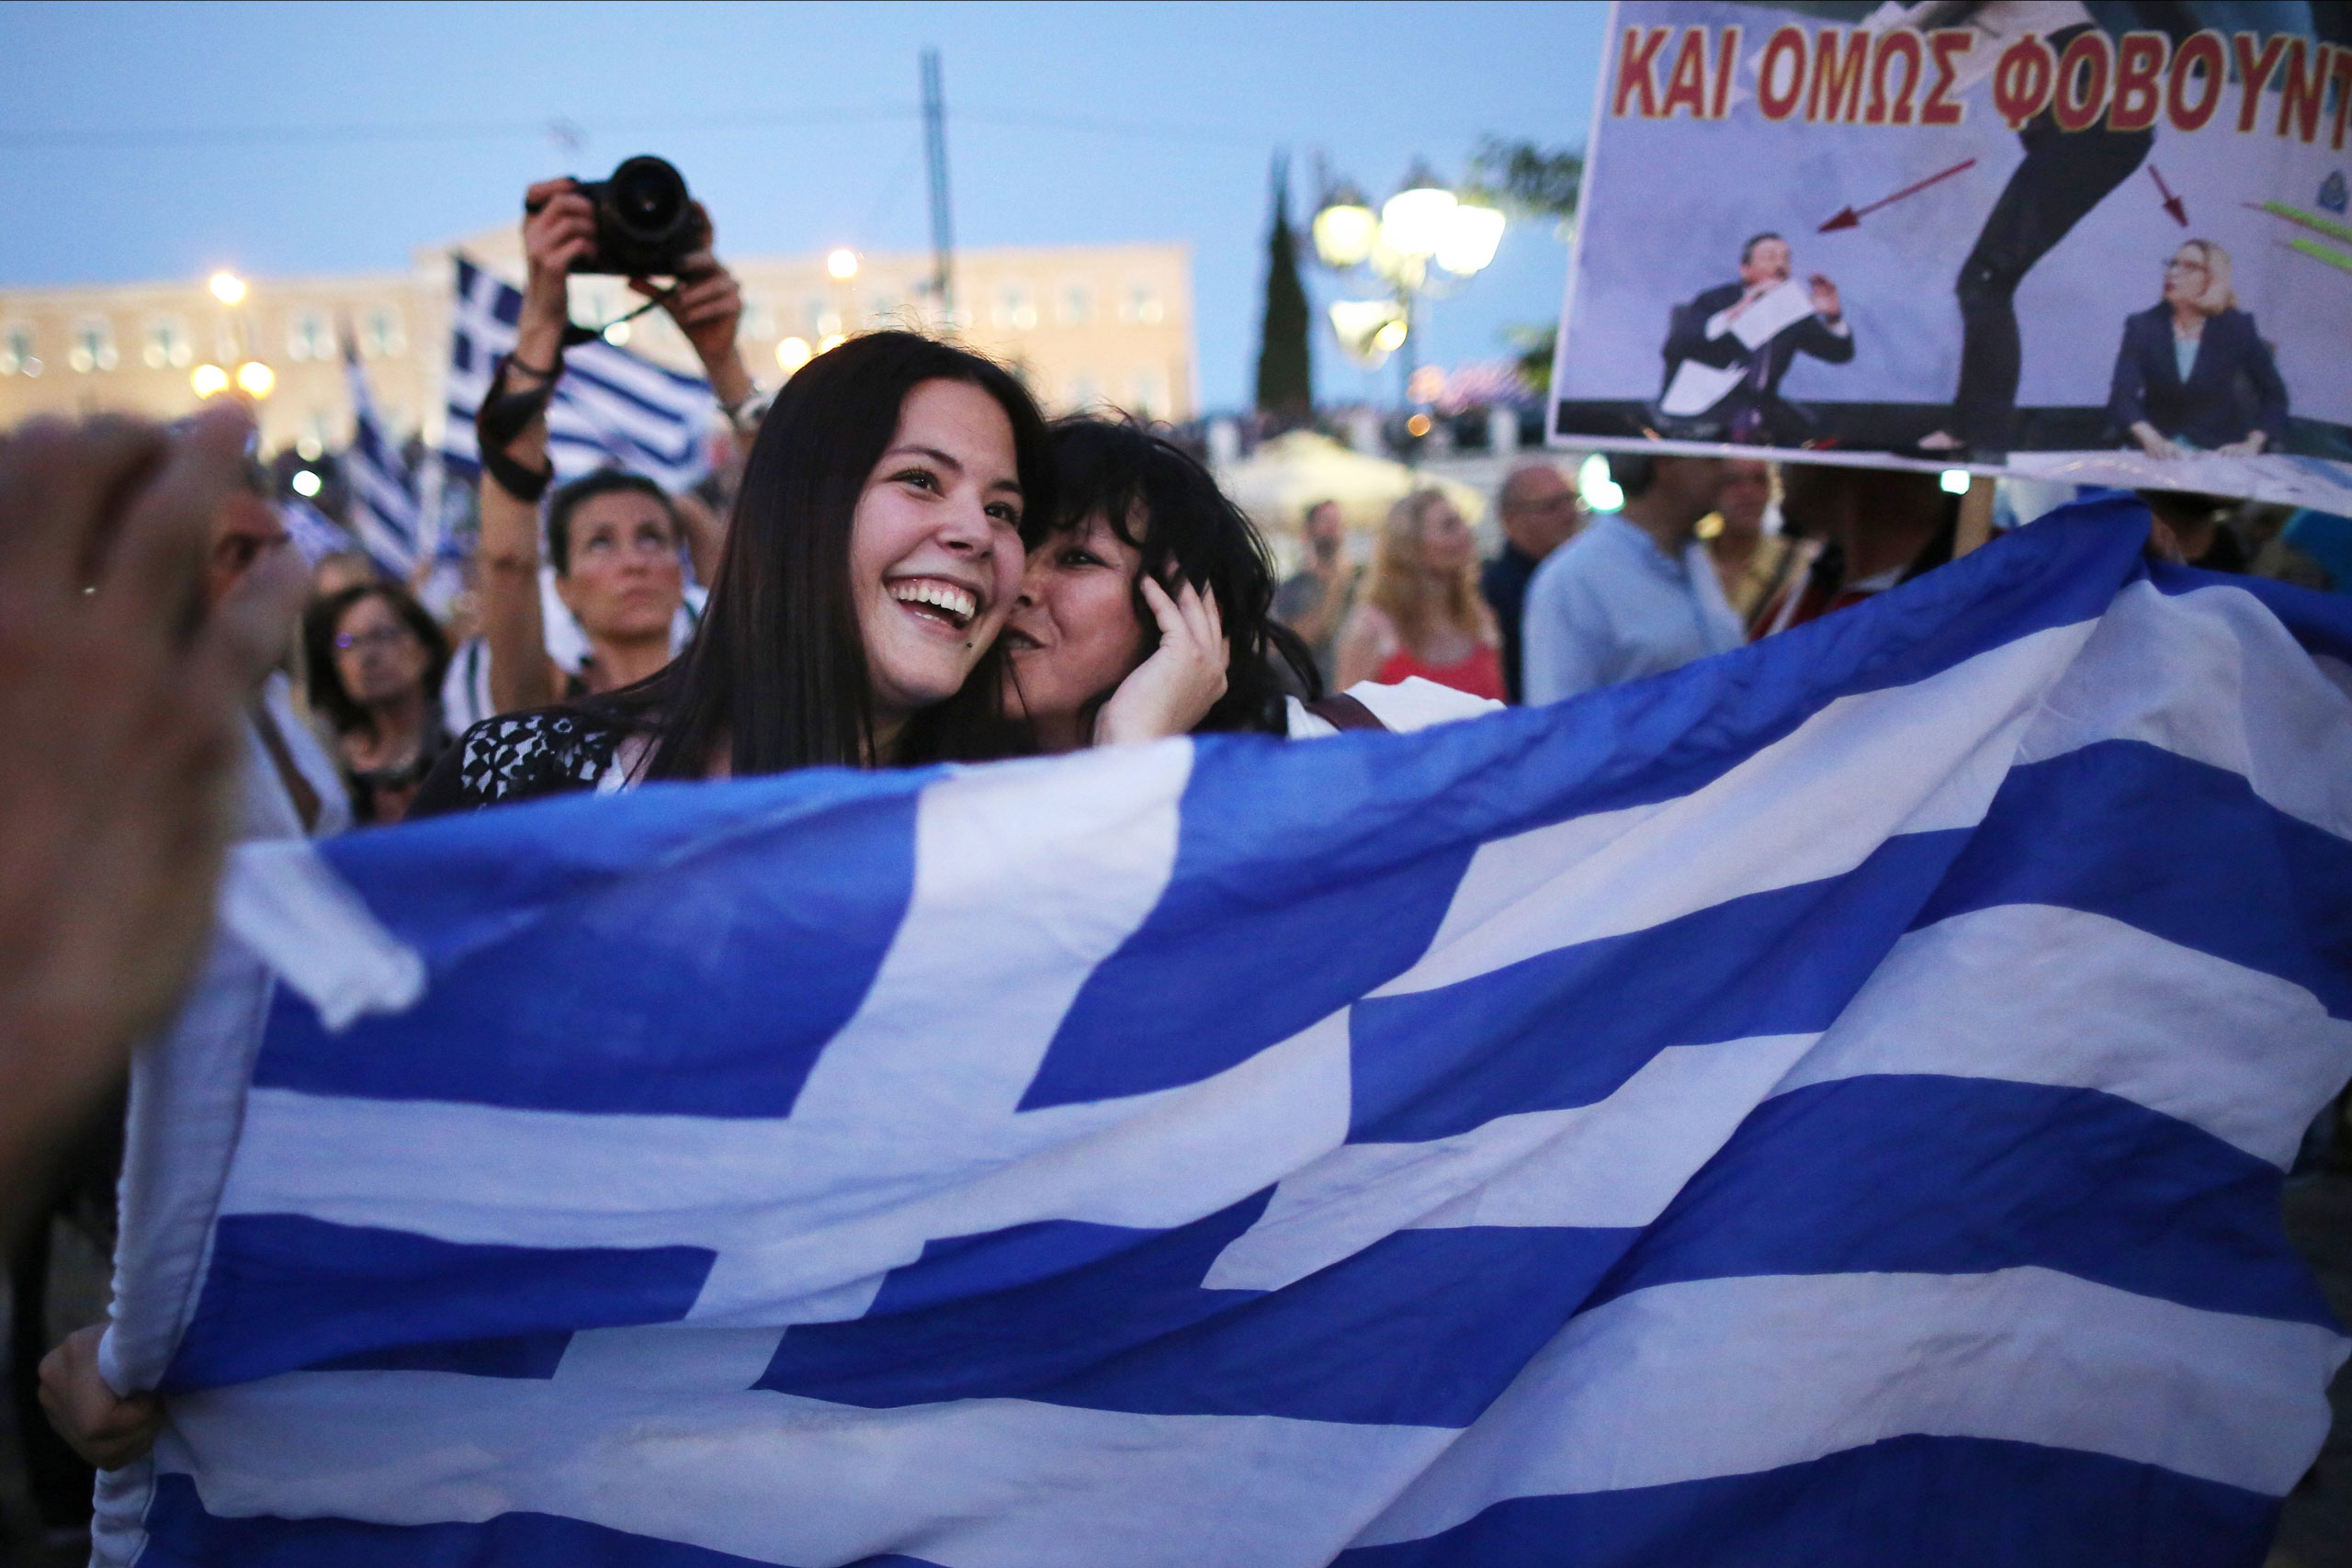 Απαισιοδοξία για την Ελλάδα: Εκτός συνόρων, κανείς δεν πιστεύει πως η χώρα γυρίζει σελίδα